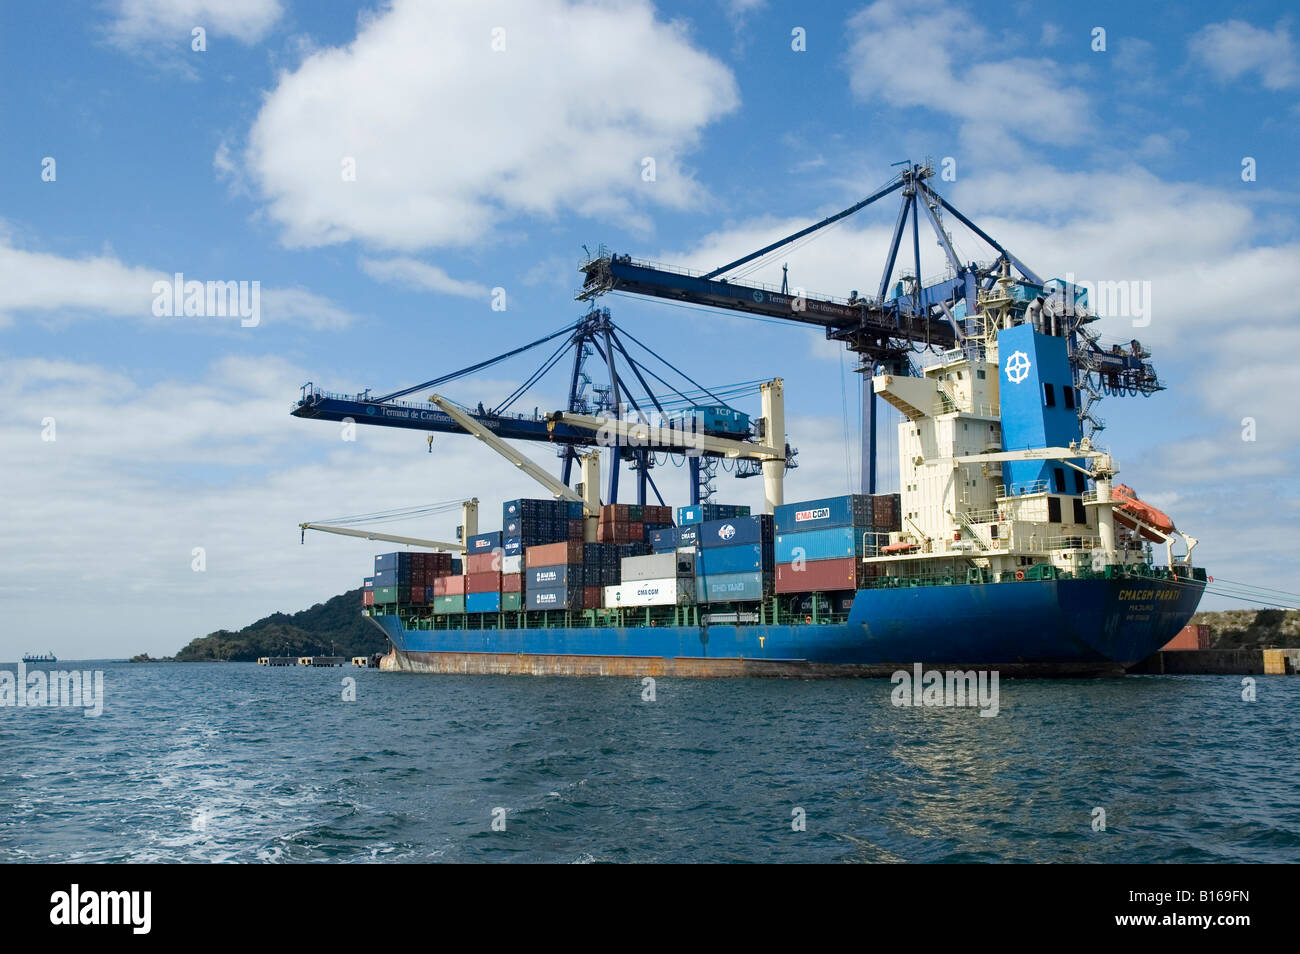 Cargo ship Stock Photo